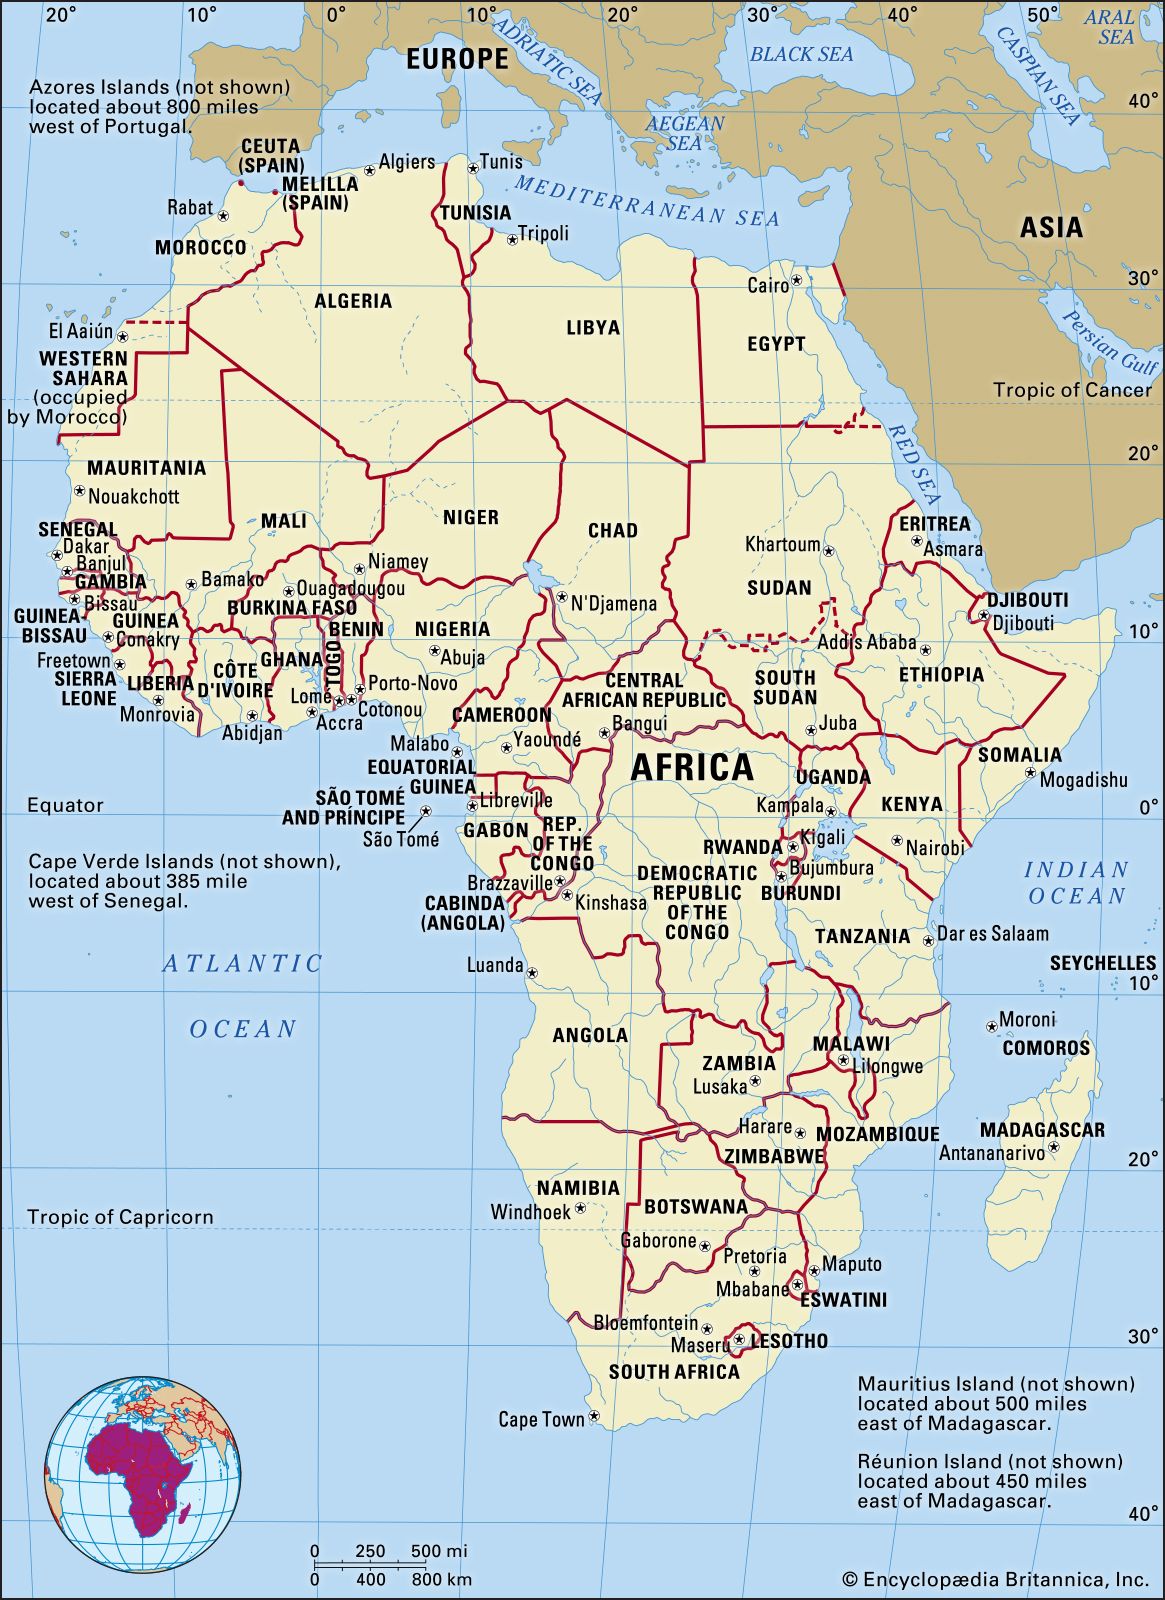 Bản đồ các nước Châu Phi được phóng to và cập nhật liên tục sẽ giúp bạn có cái nhìn tổng quan về đất nước, con người và văn hóa Châu lục đầy ấn tượng. Thông qua đó, bạn có thể lên kế hoạch cho chuyến du lịch sắp tới hoặc tìm hiểu về lịch sử và văn hóa của các quốc gia trên đất Châu Phi.